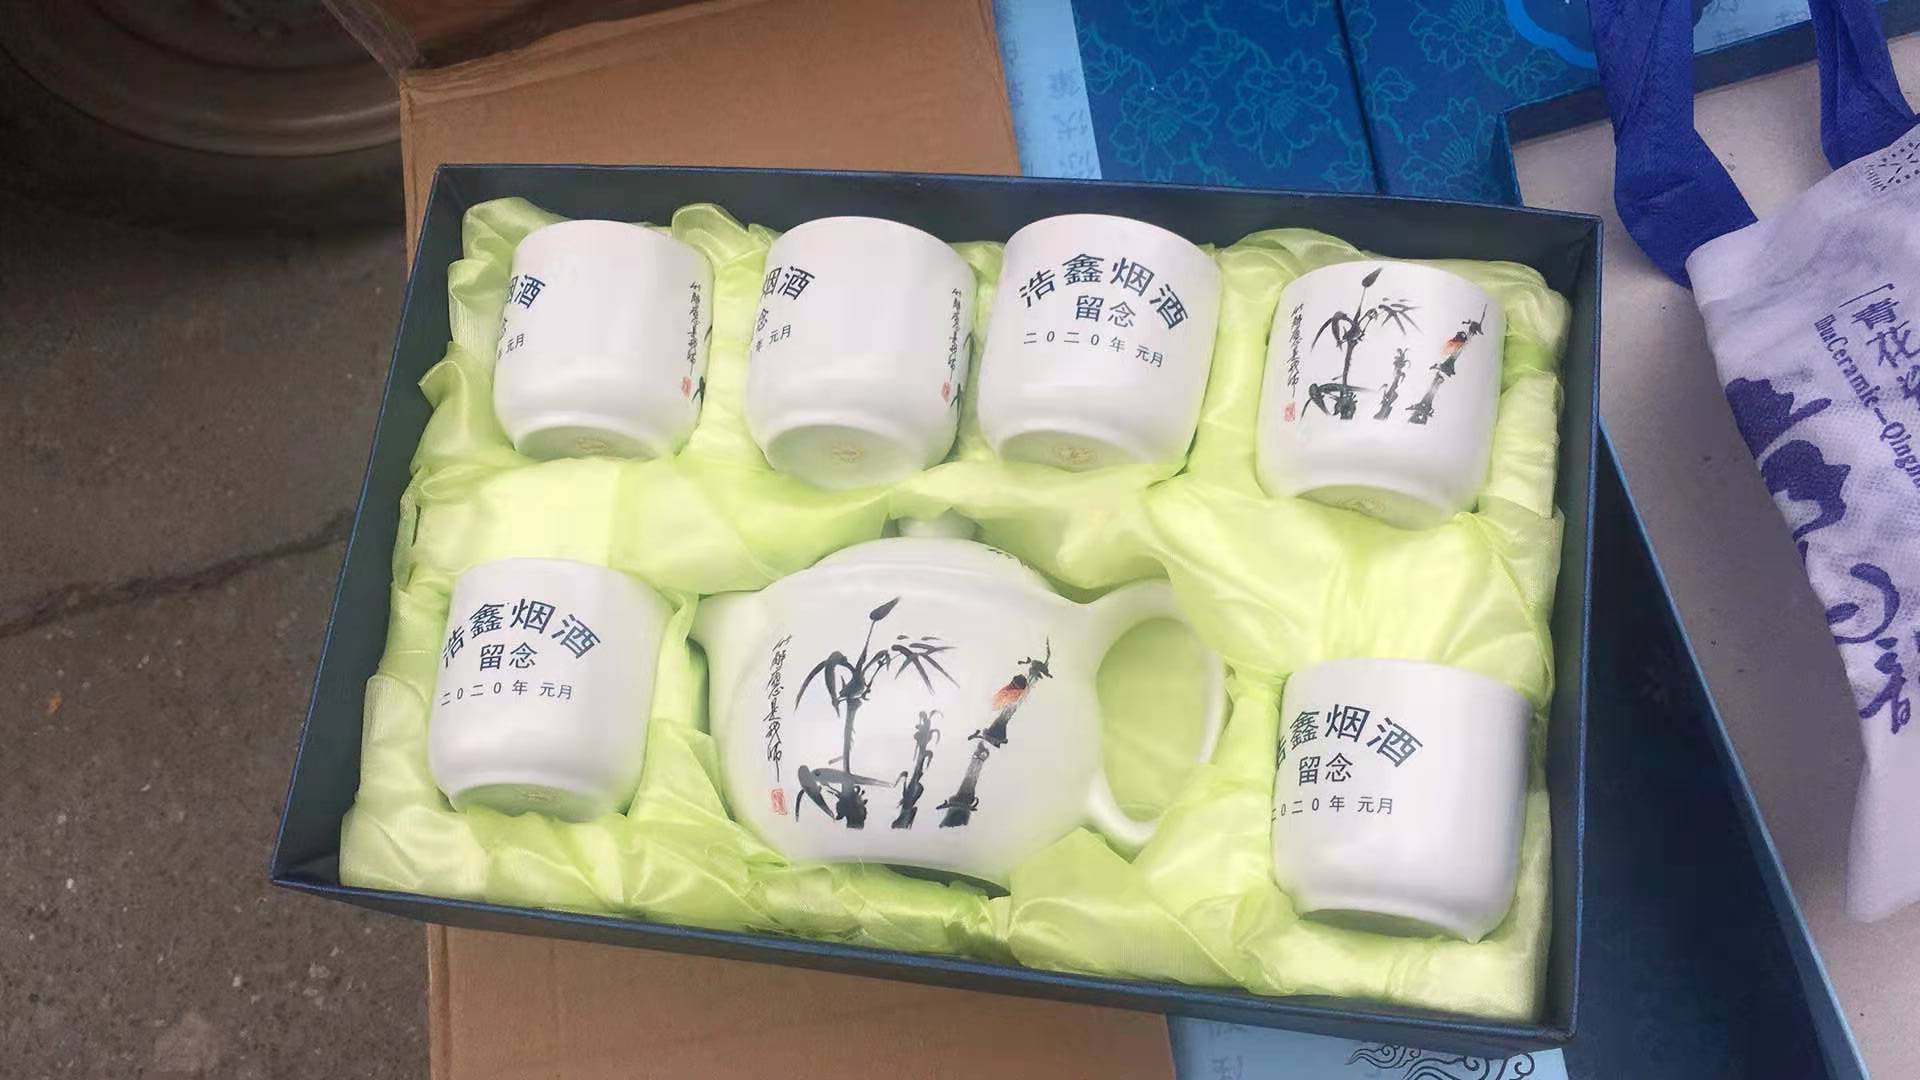 高档陶瓷茶具套装 节日福利礼品瓷 7头印花陶瓷茶具 开业促销商务礼品定制logo